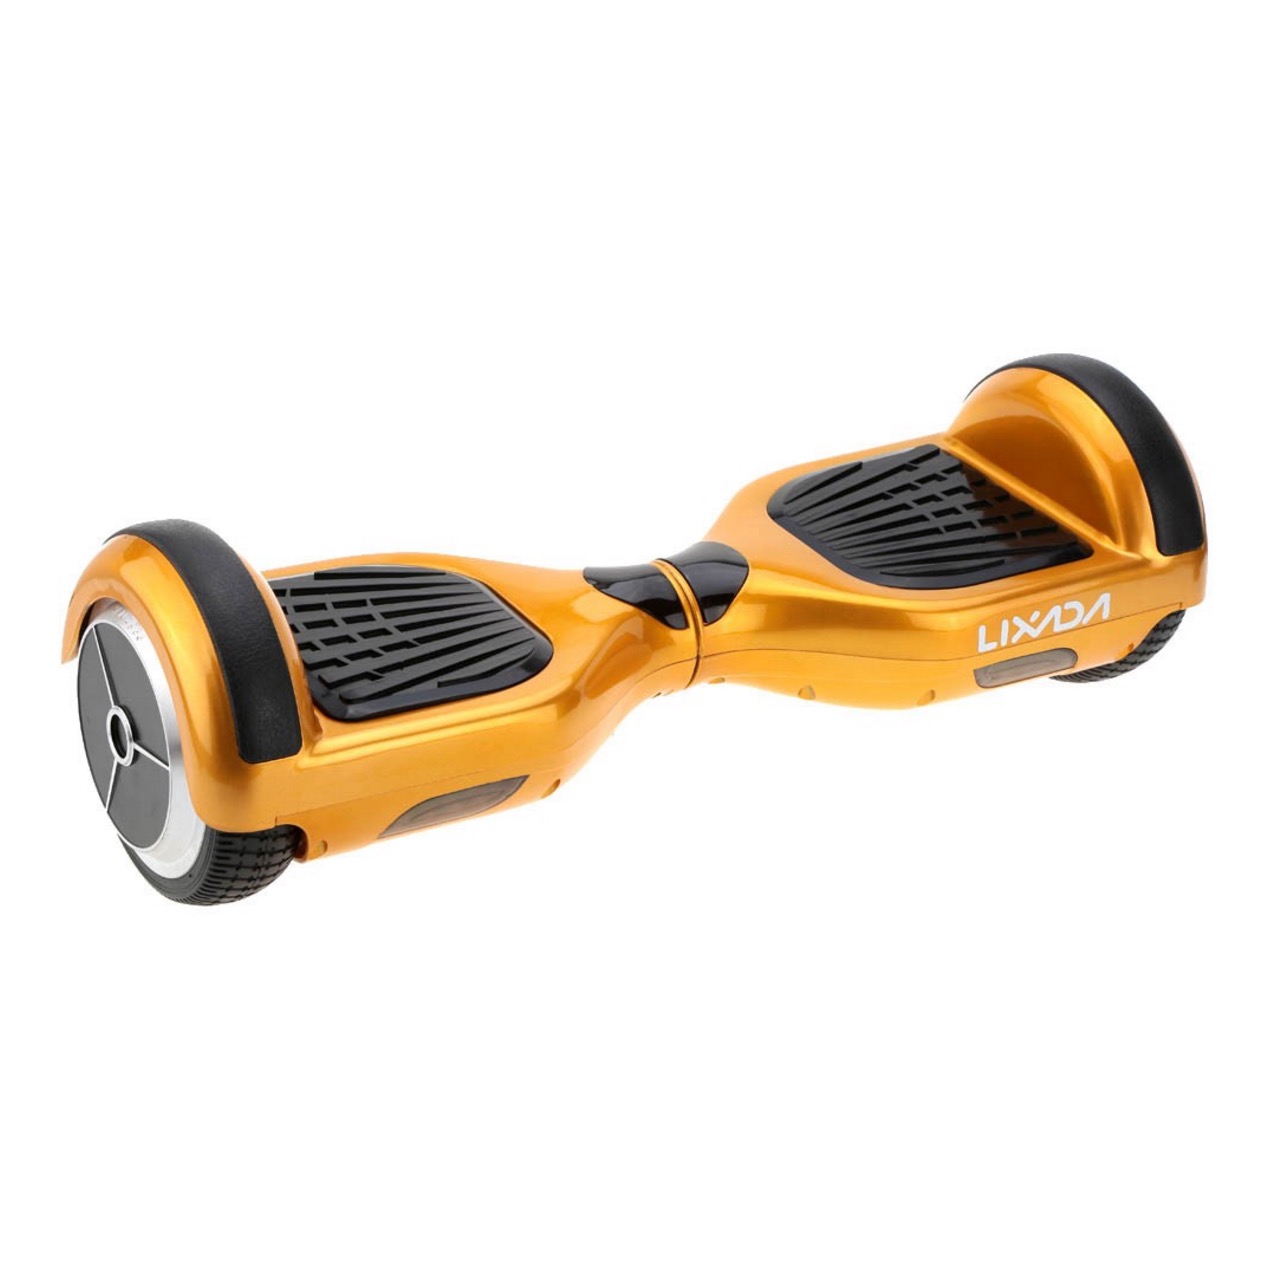 Pricedrop! LIXADA Self Balancing Skateboard jetzt für 139,85 Euro inkl. Versand aus Deutschland